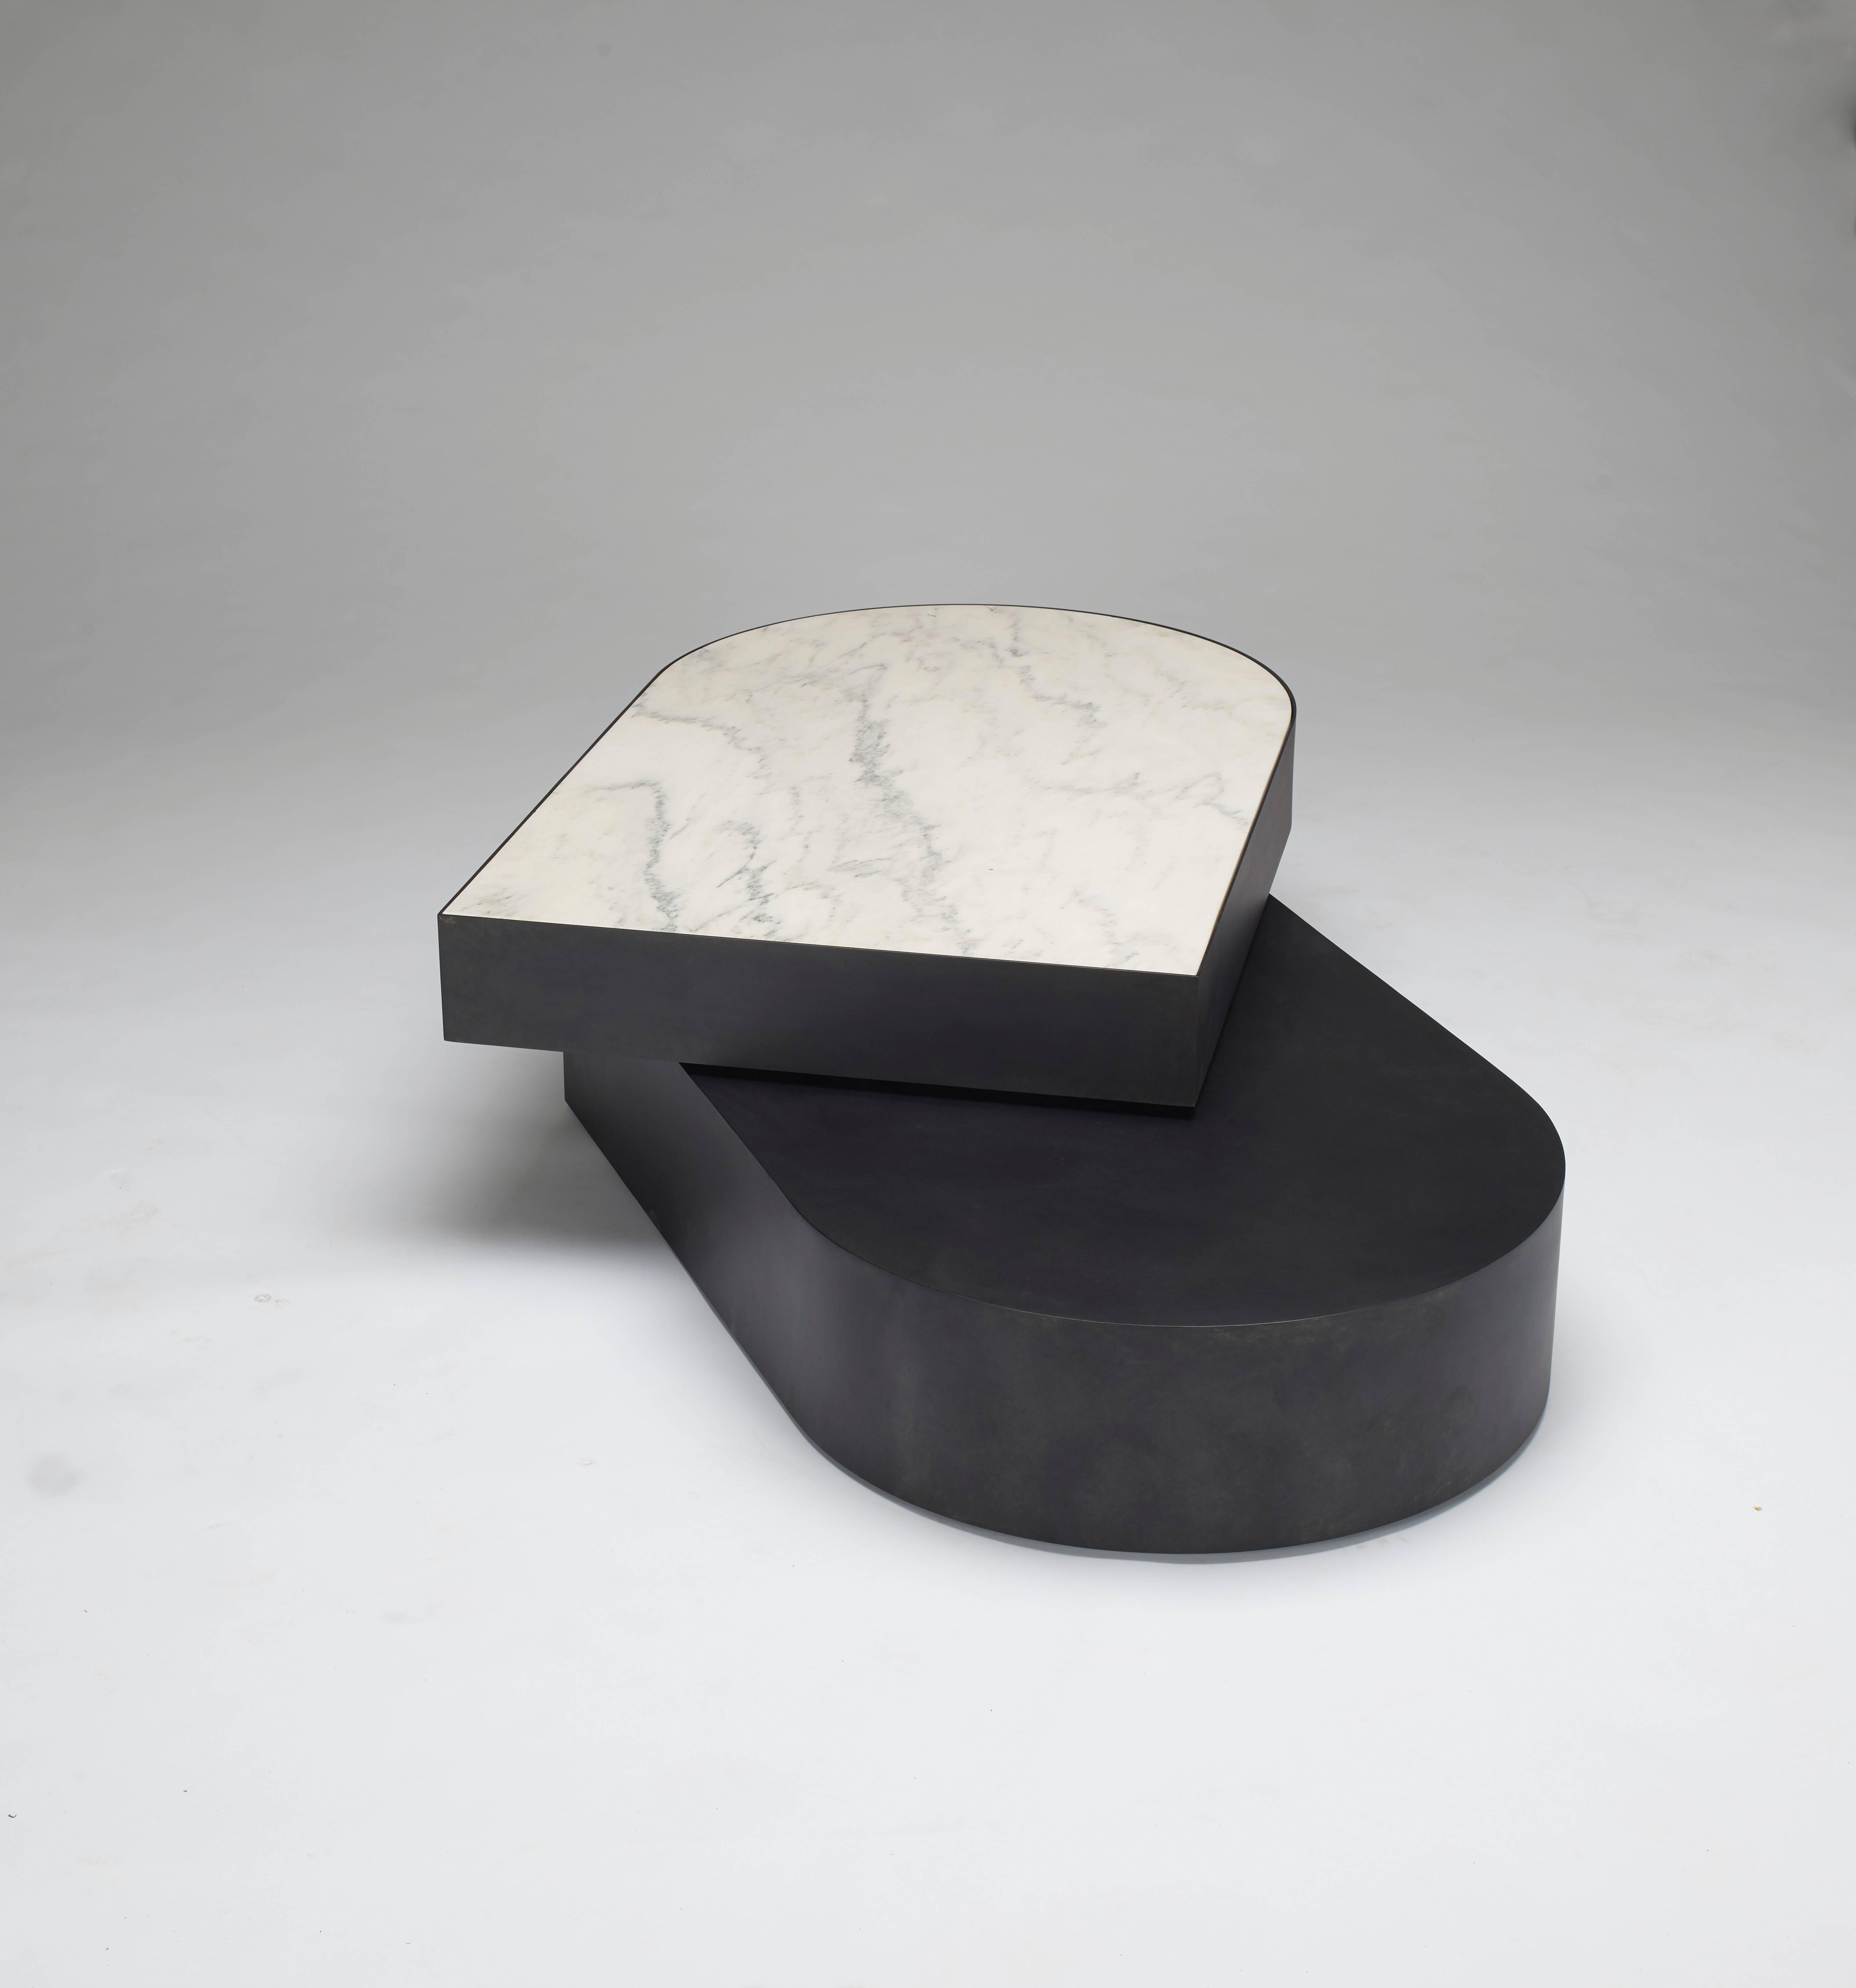 La table contemporaine Columbus est fabriquée en aluminium soudé à revêtement en poudre noir mat, avec un plateau en laiton poli miroir. Fabriqué en deux pièces avec une entretoise en delrin personnalisée entre les éléments. Cette conception moderne